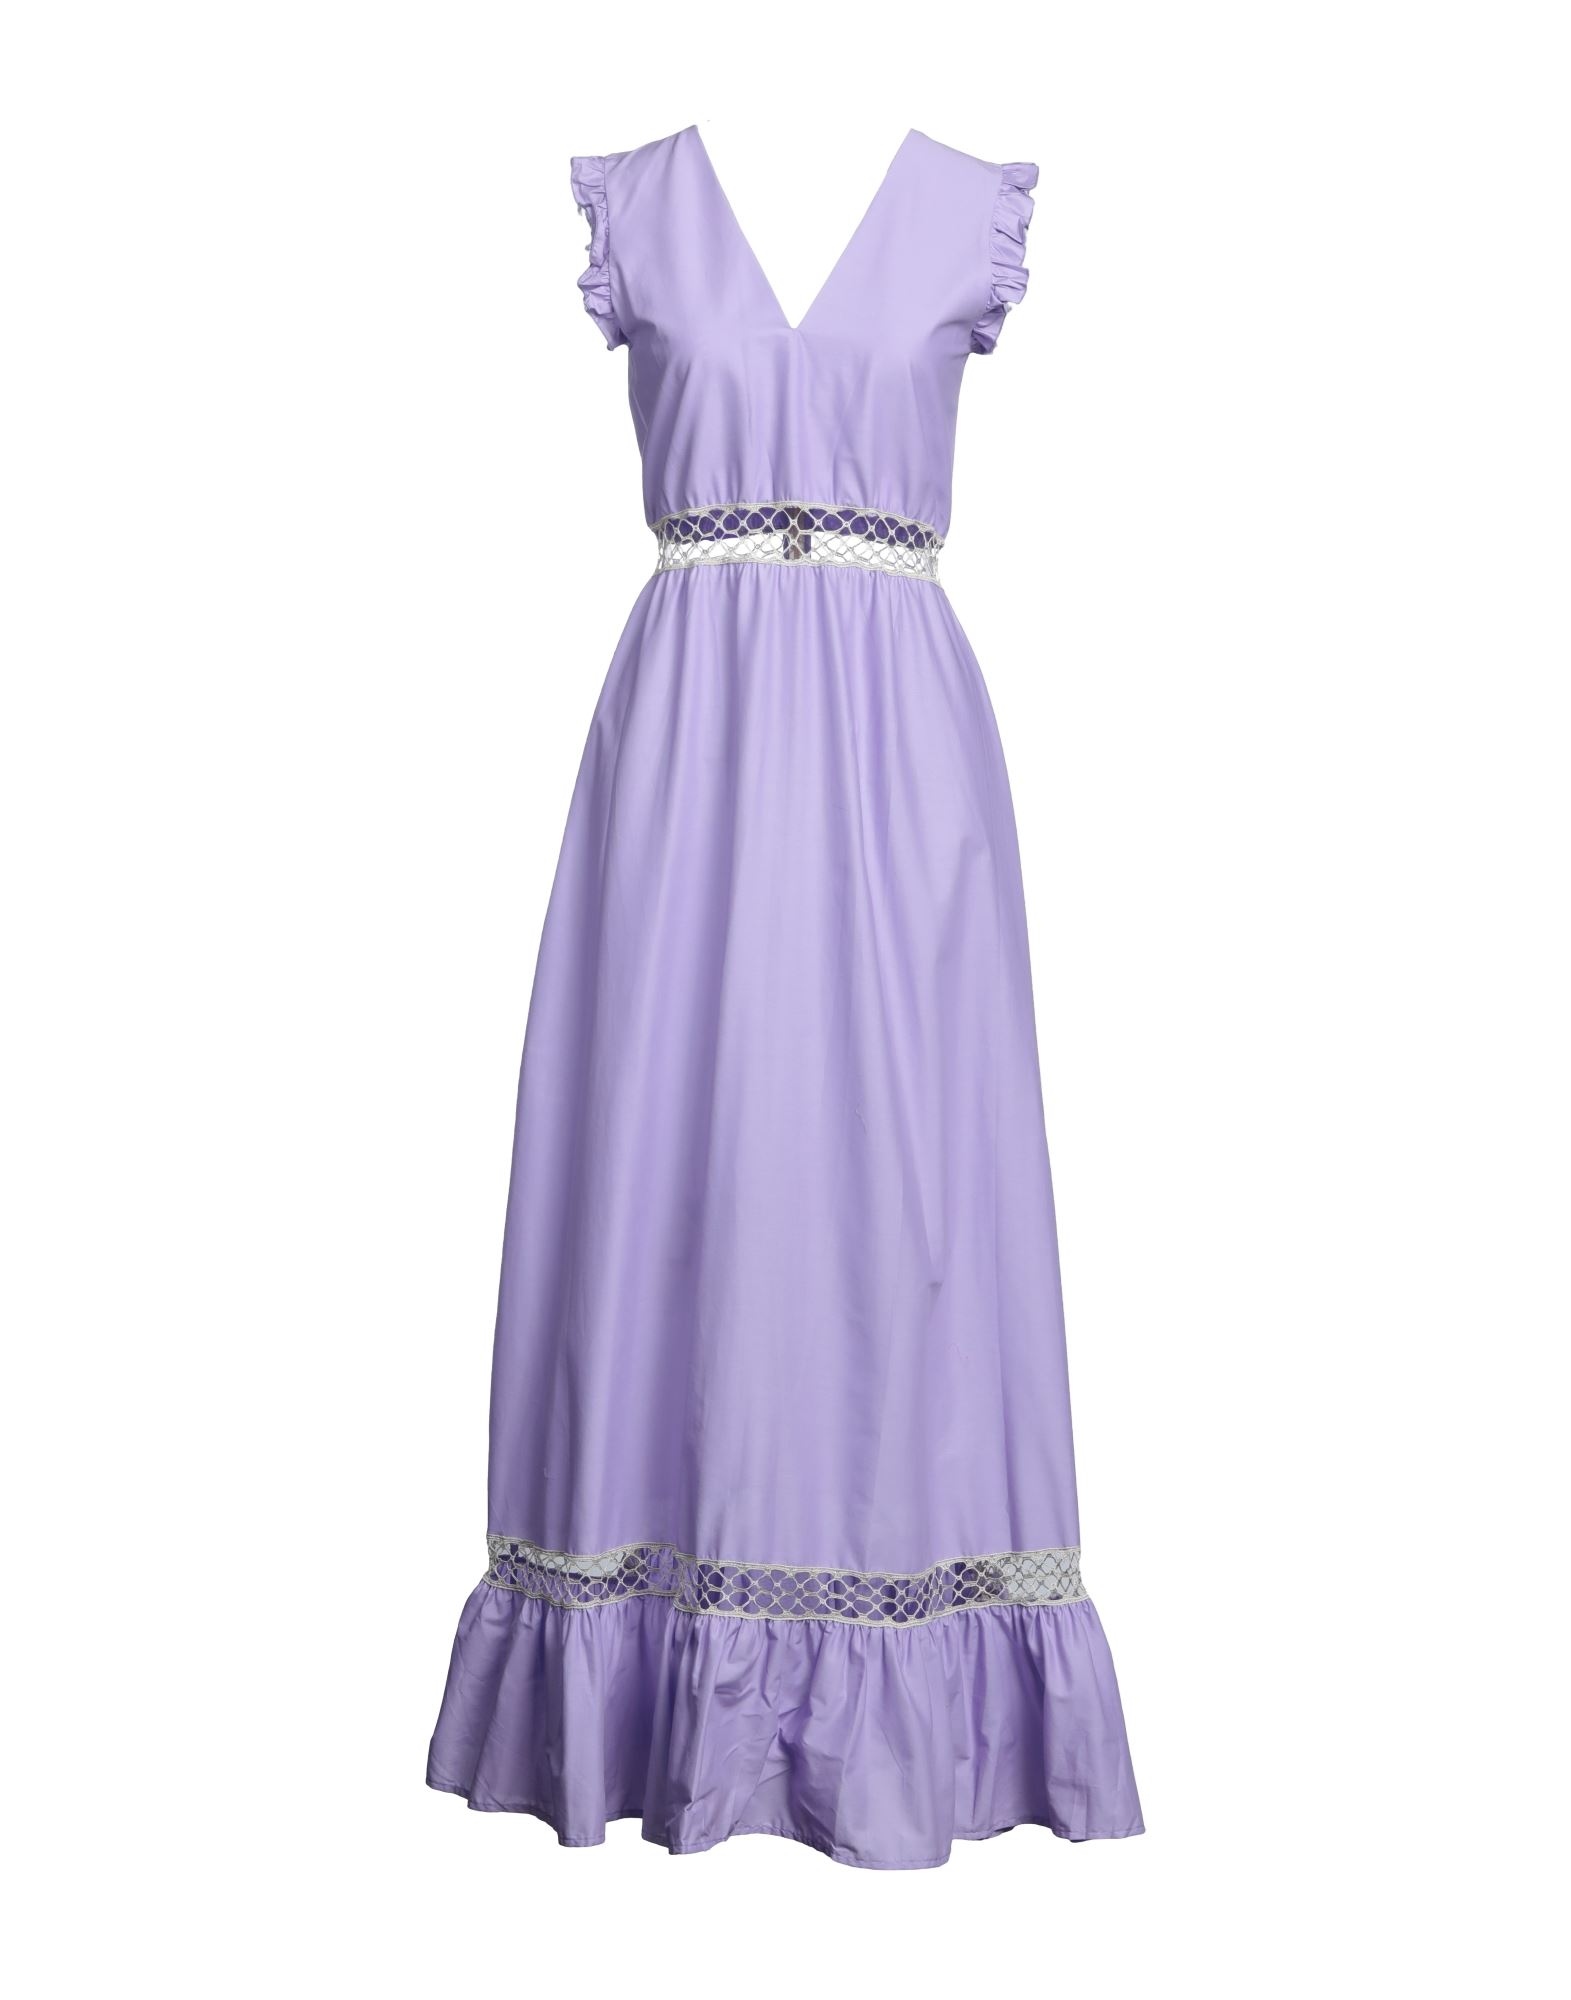 Iu Rita Mennoia Long Dresses In Purple